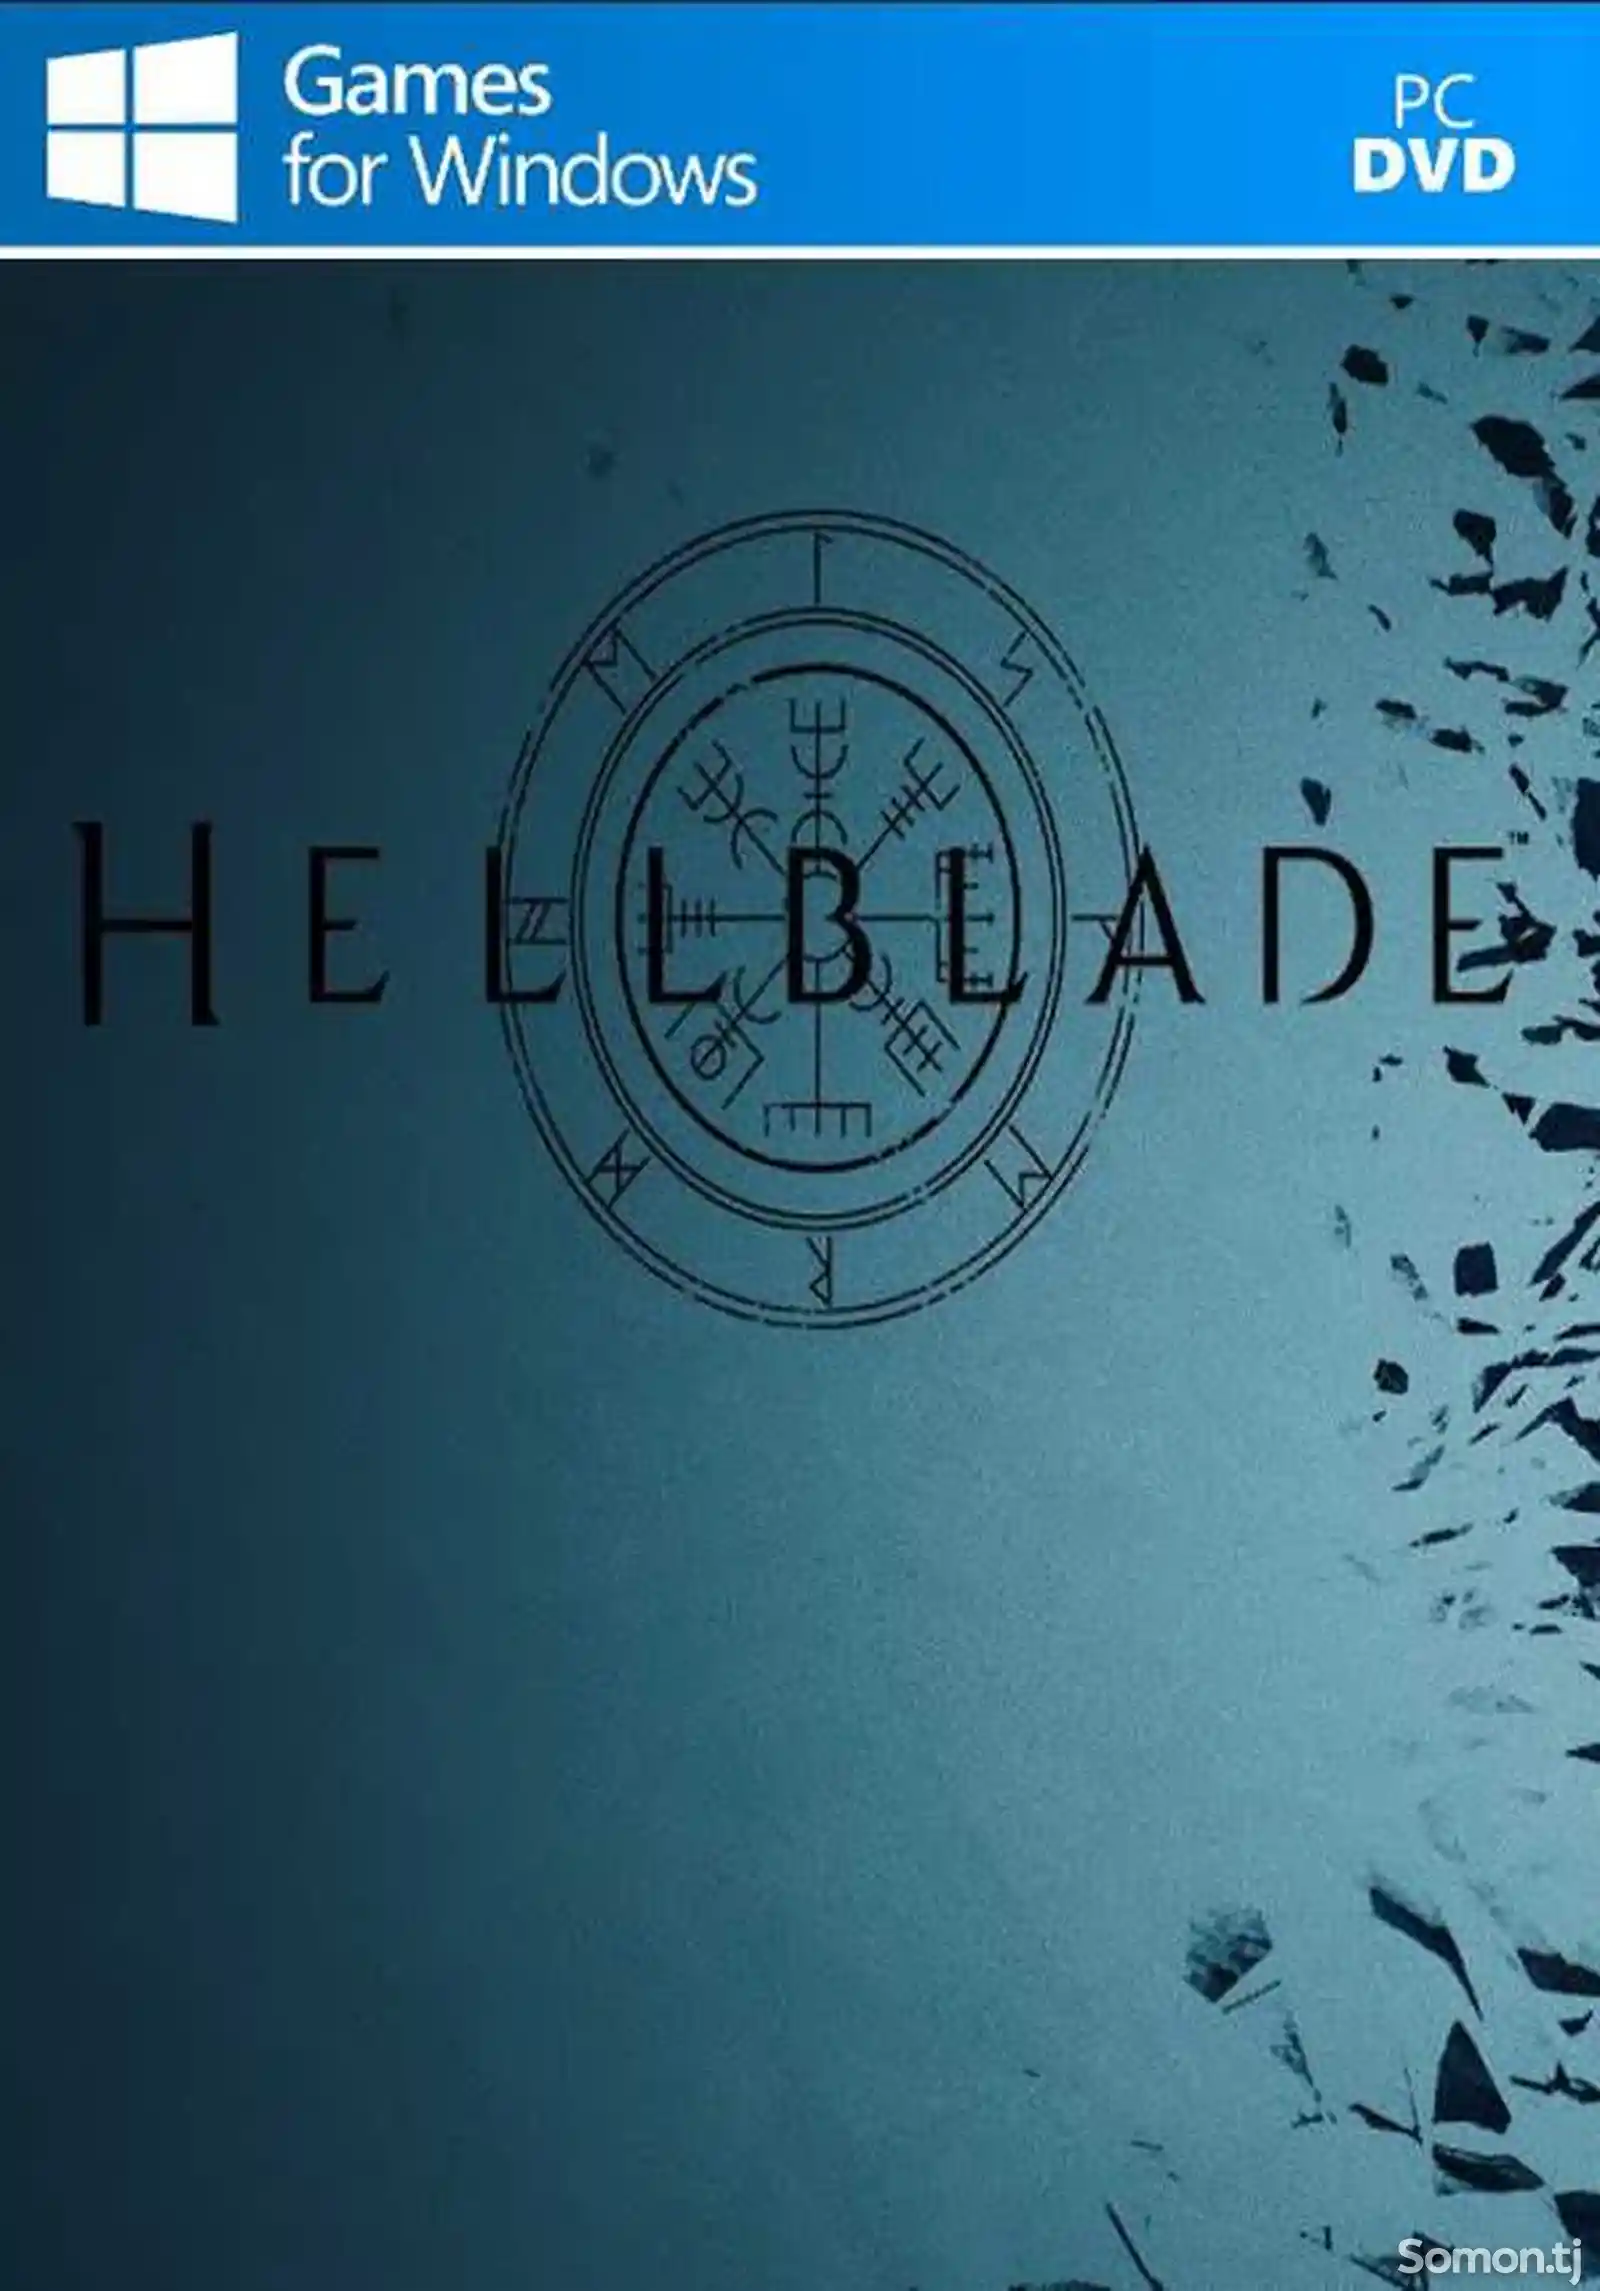 Игра Hellblade senuas sacrifice для компьютера-пк-pc-1